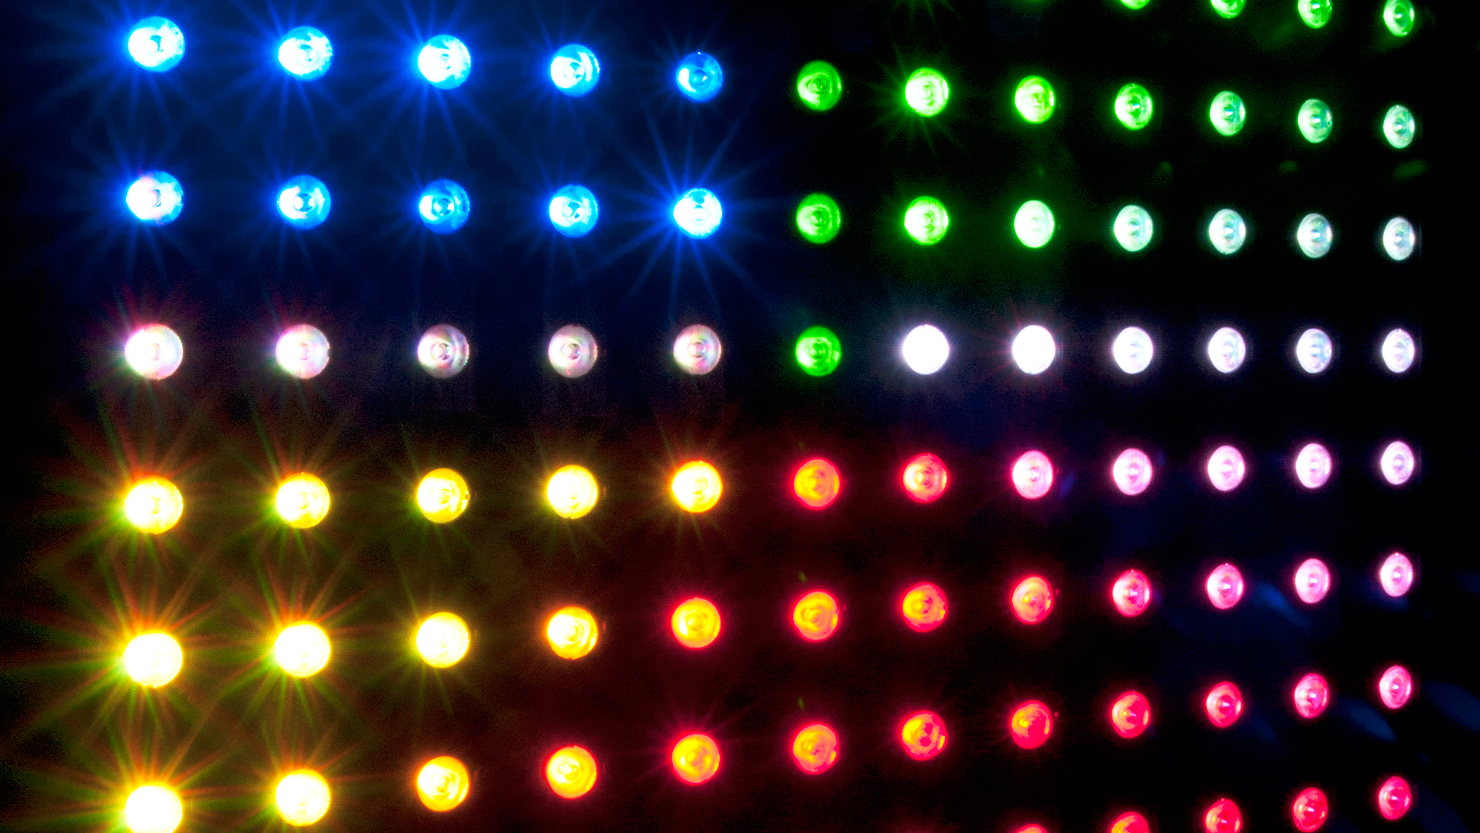 CHAUVET DJ - Barre LED RGB Wash Sans Fil Colorband Pix-M ILS : Barre LED  sur Sparklers Club